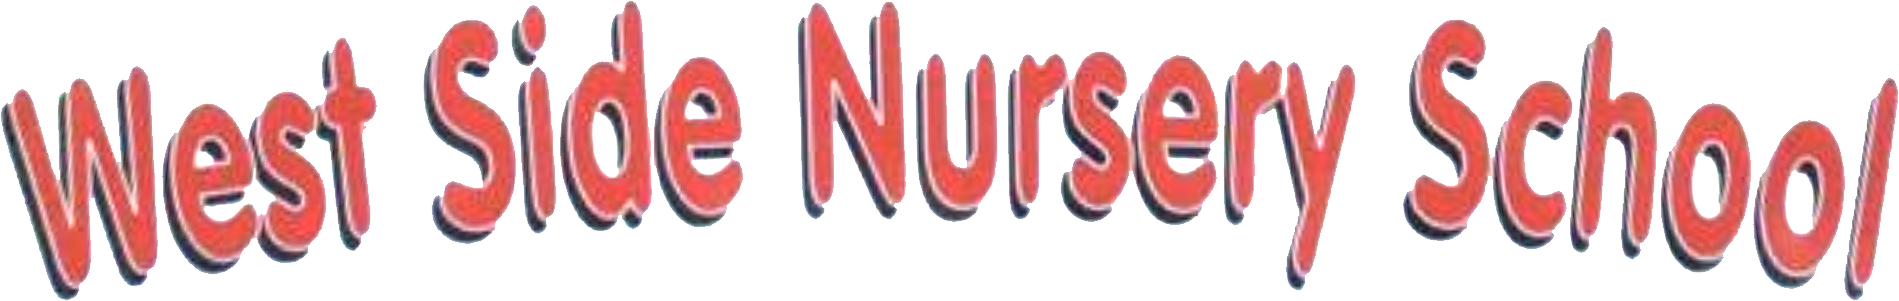 West Side Nursery School Logo